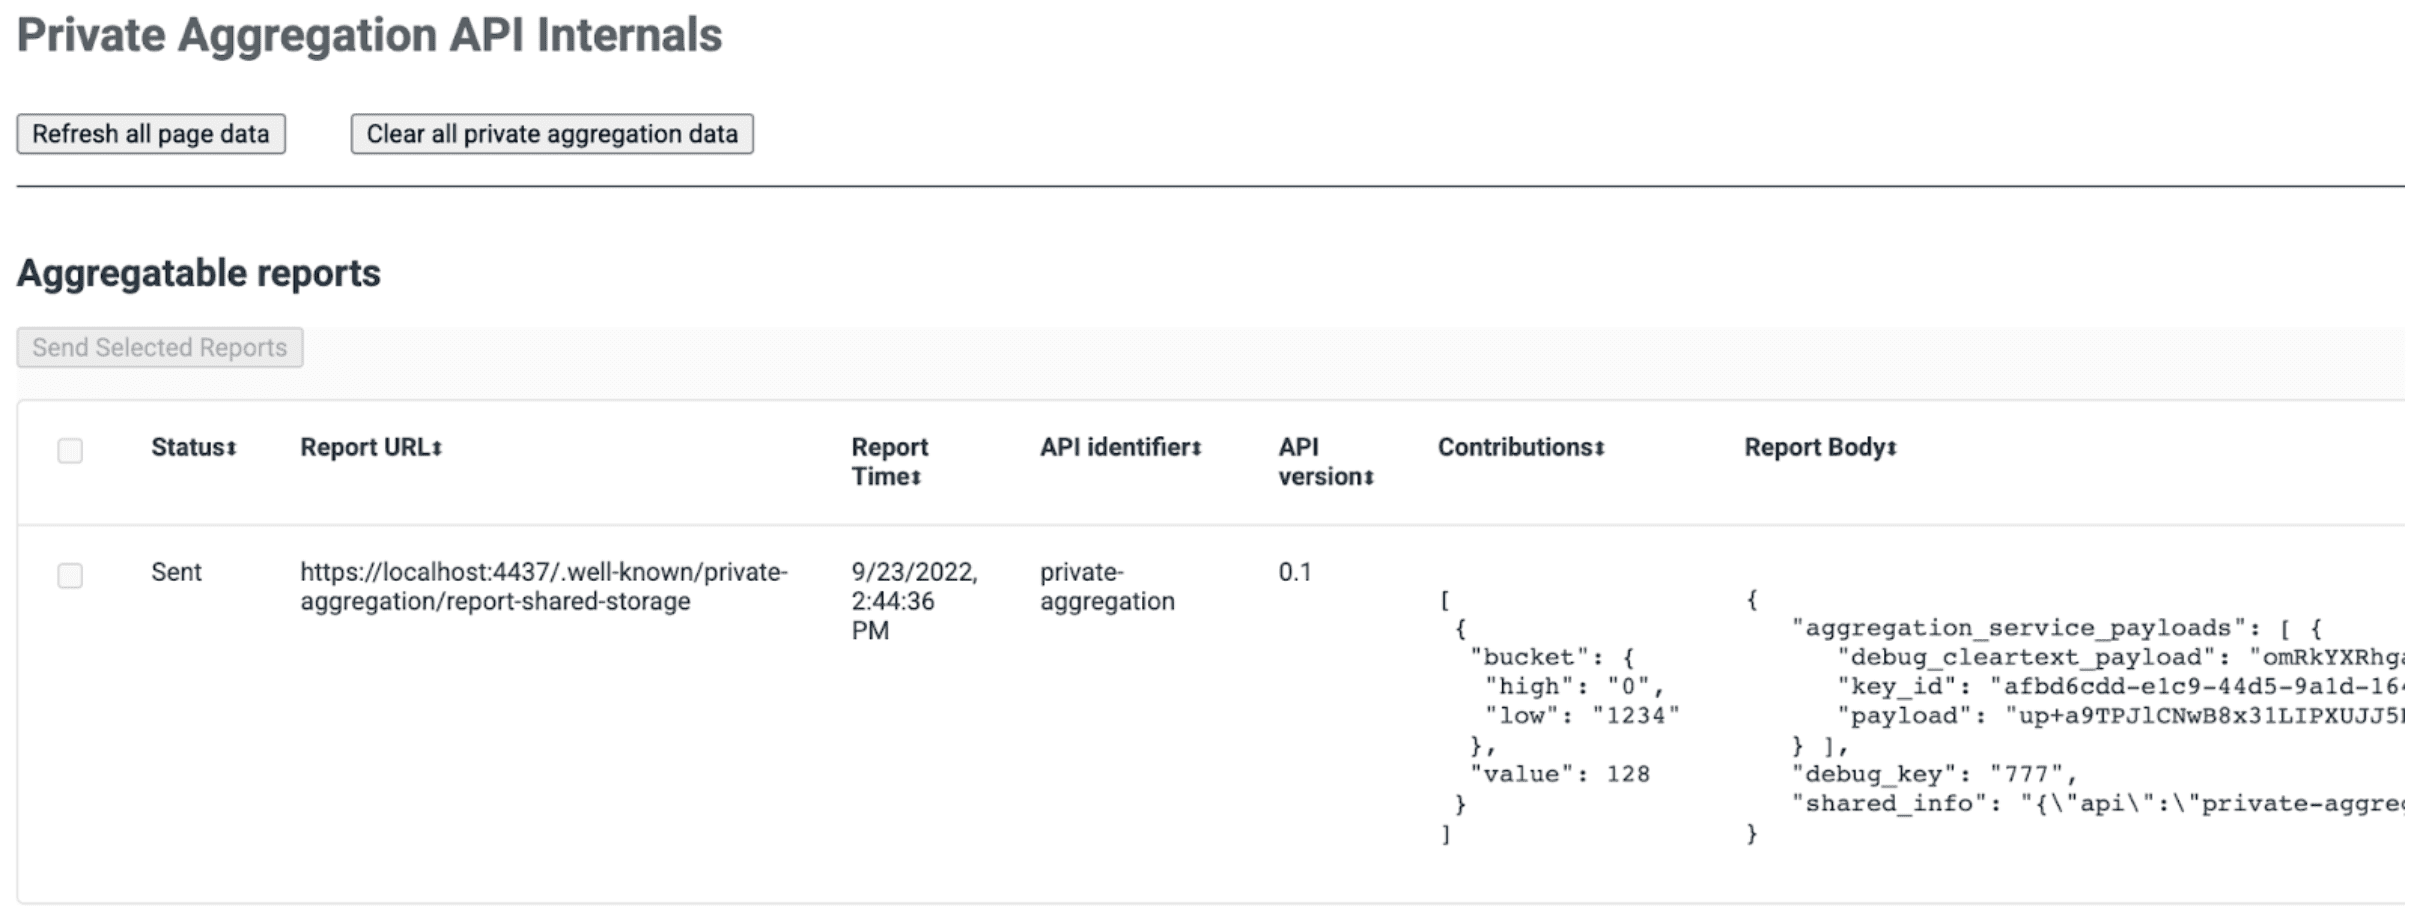 снимок экрана страницы внутренних компонентов API частного агрегирования